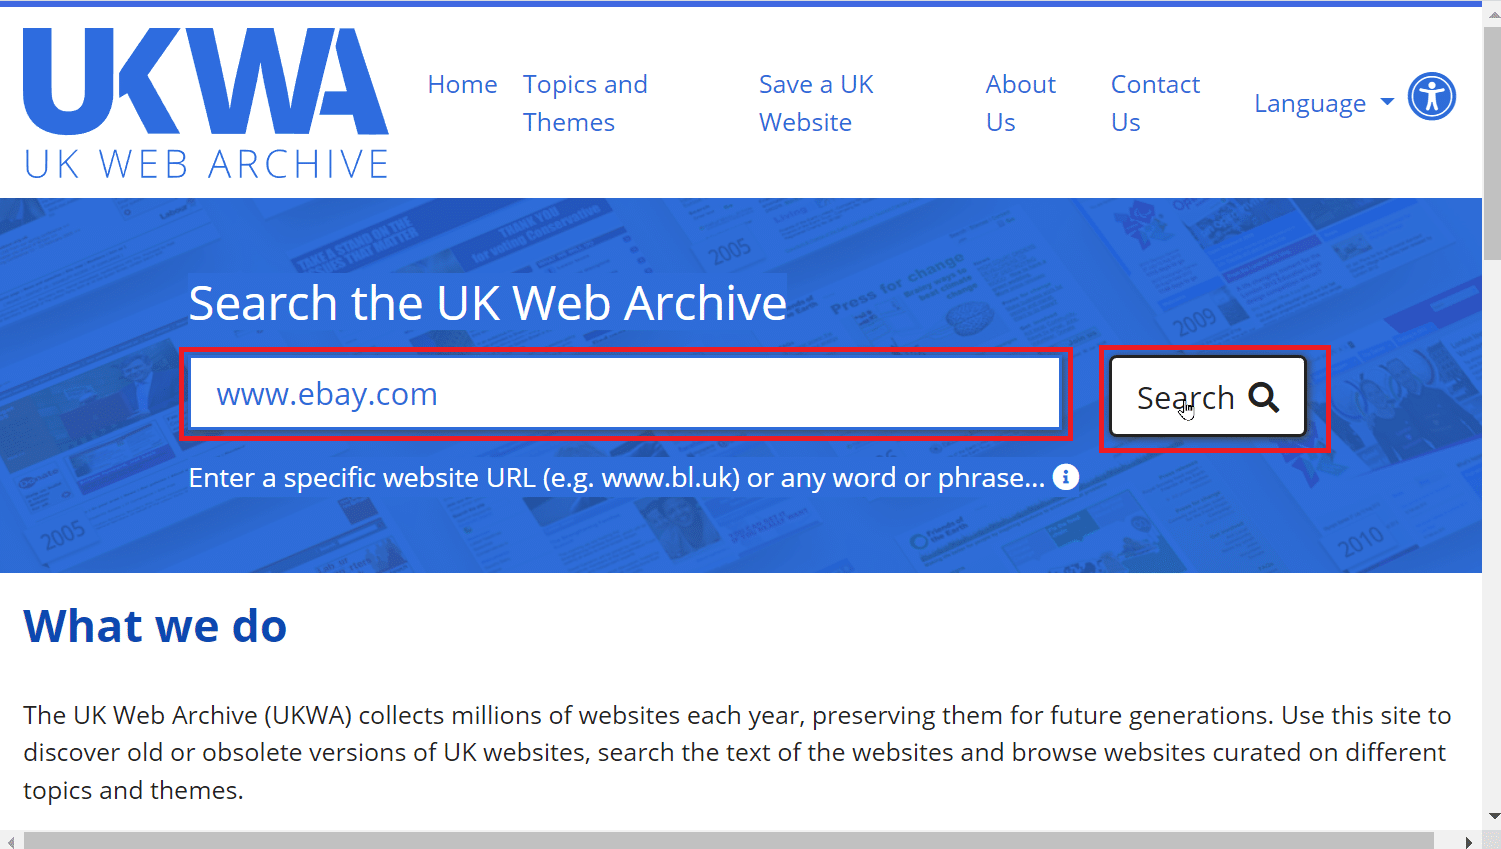 cerca nell'archivio web del Regno Unito sulla barra di ricerca e fai clic su cerca